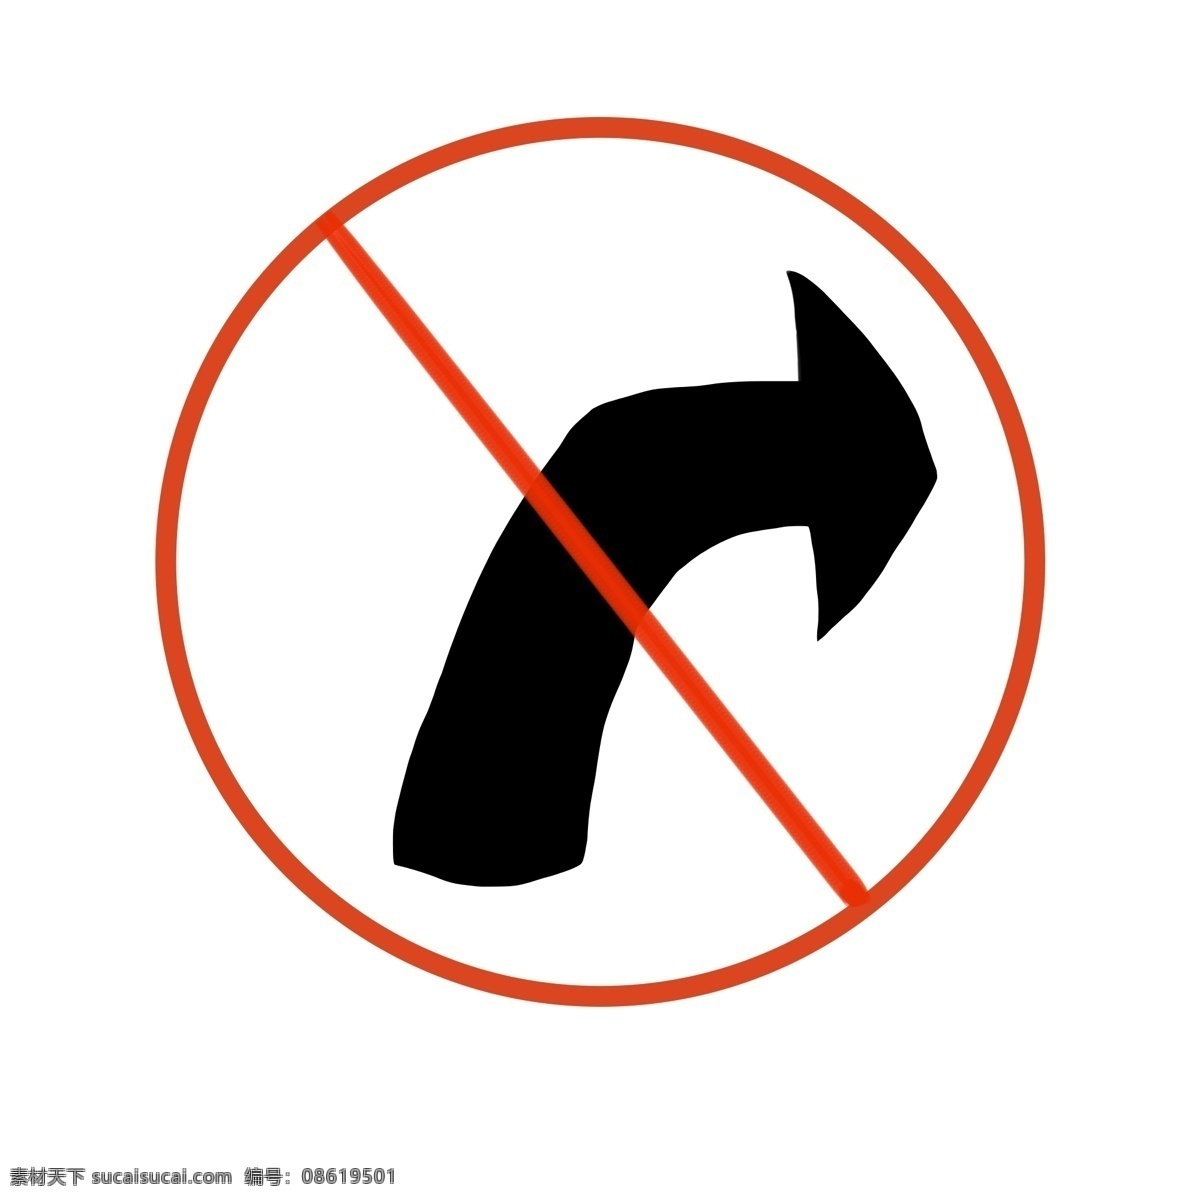 禁止 右 转 警示牌 插画 红色的警示牌 漂亮的警示牌 创意警示牌 圆形警示牌 警示牌插画